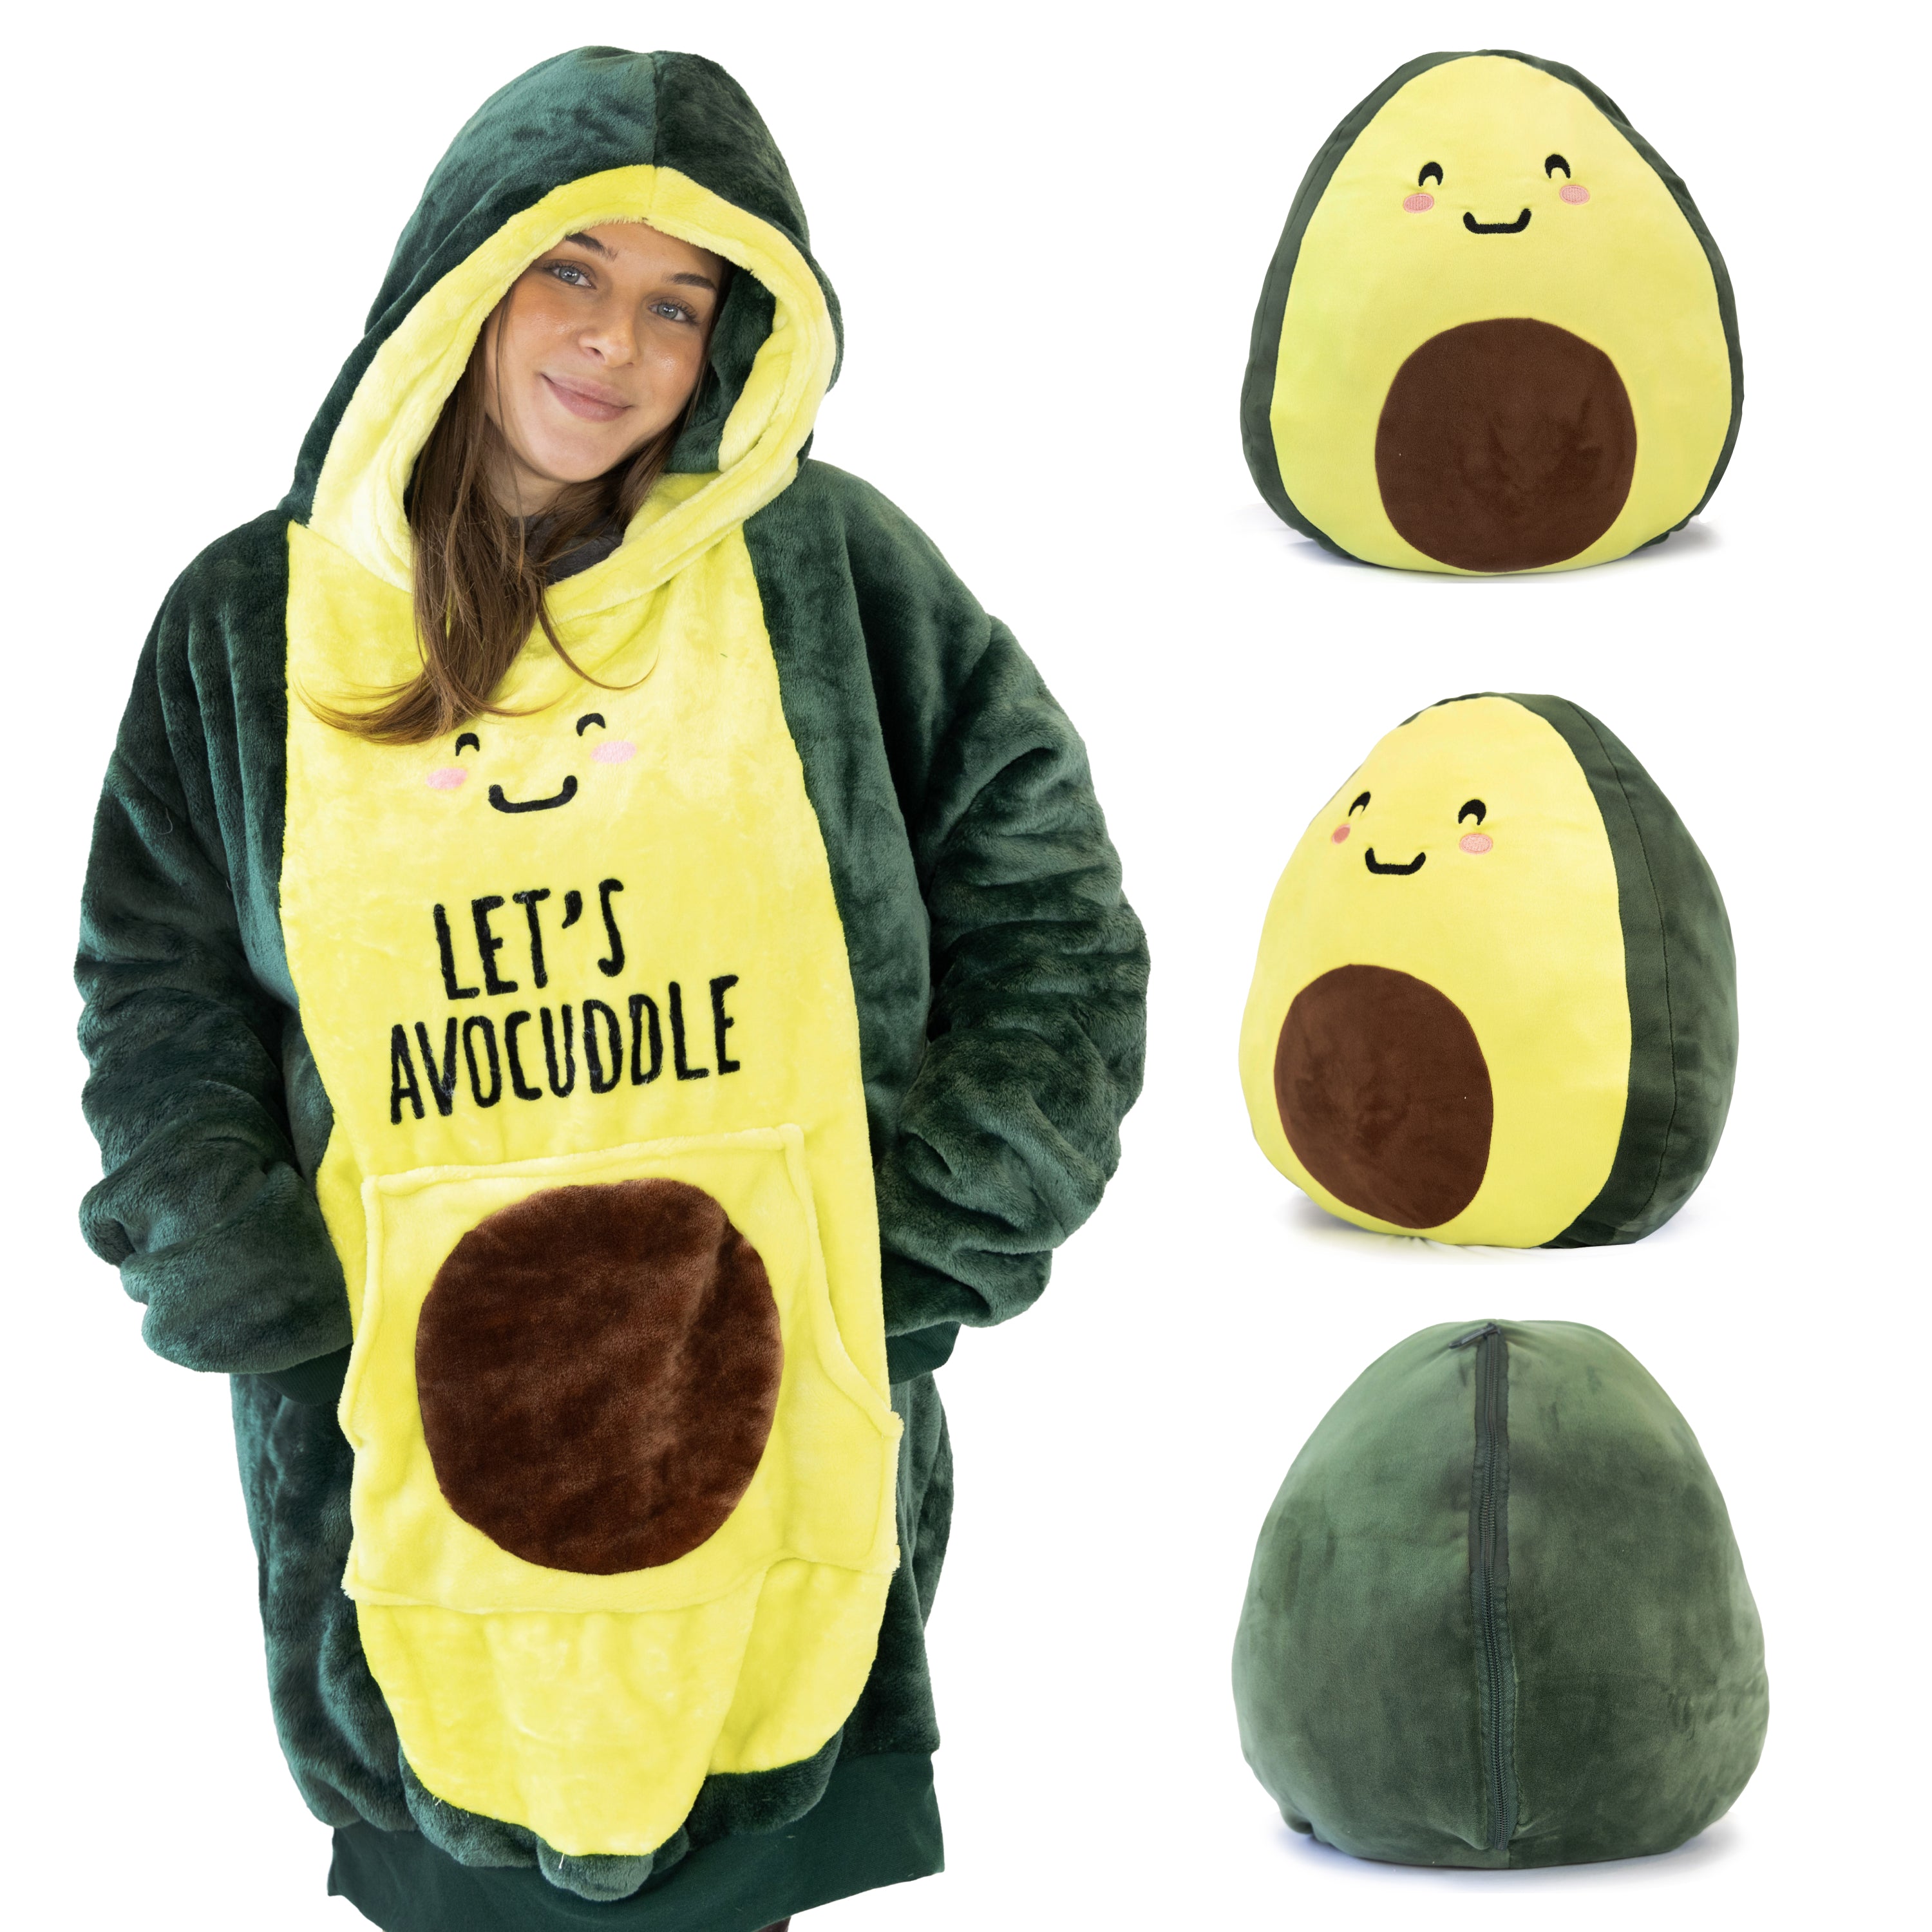 Avocado Snugible 2-in-1 Blanket Hoodie & Pillow